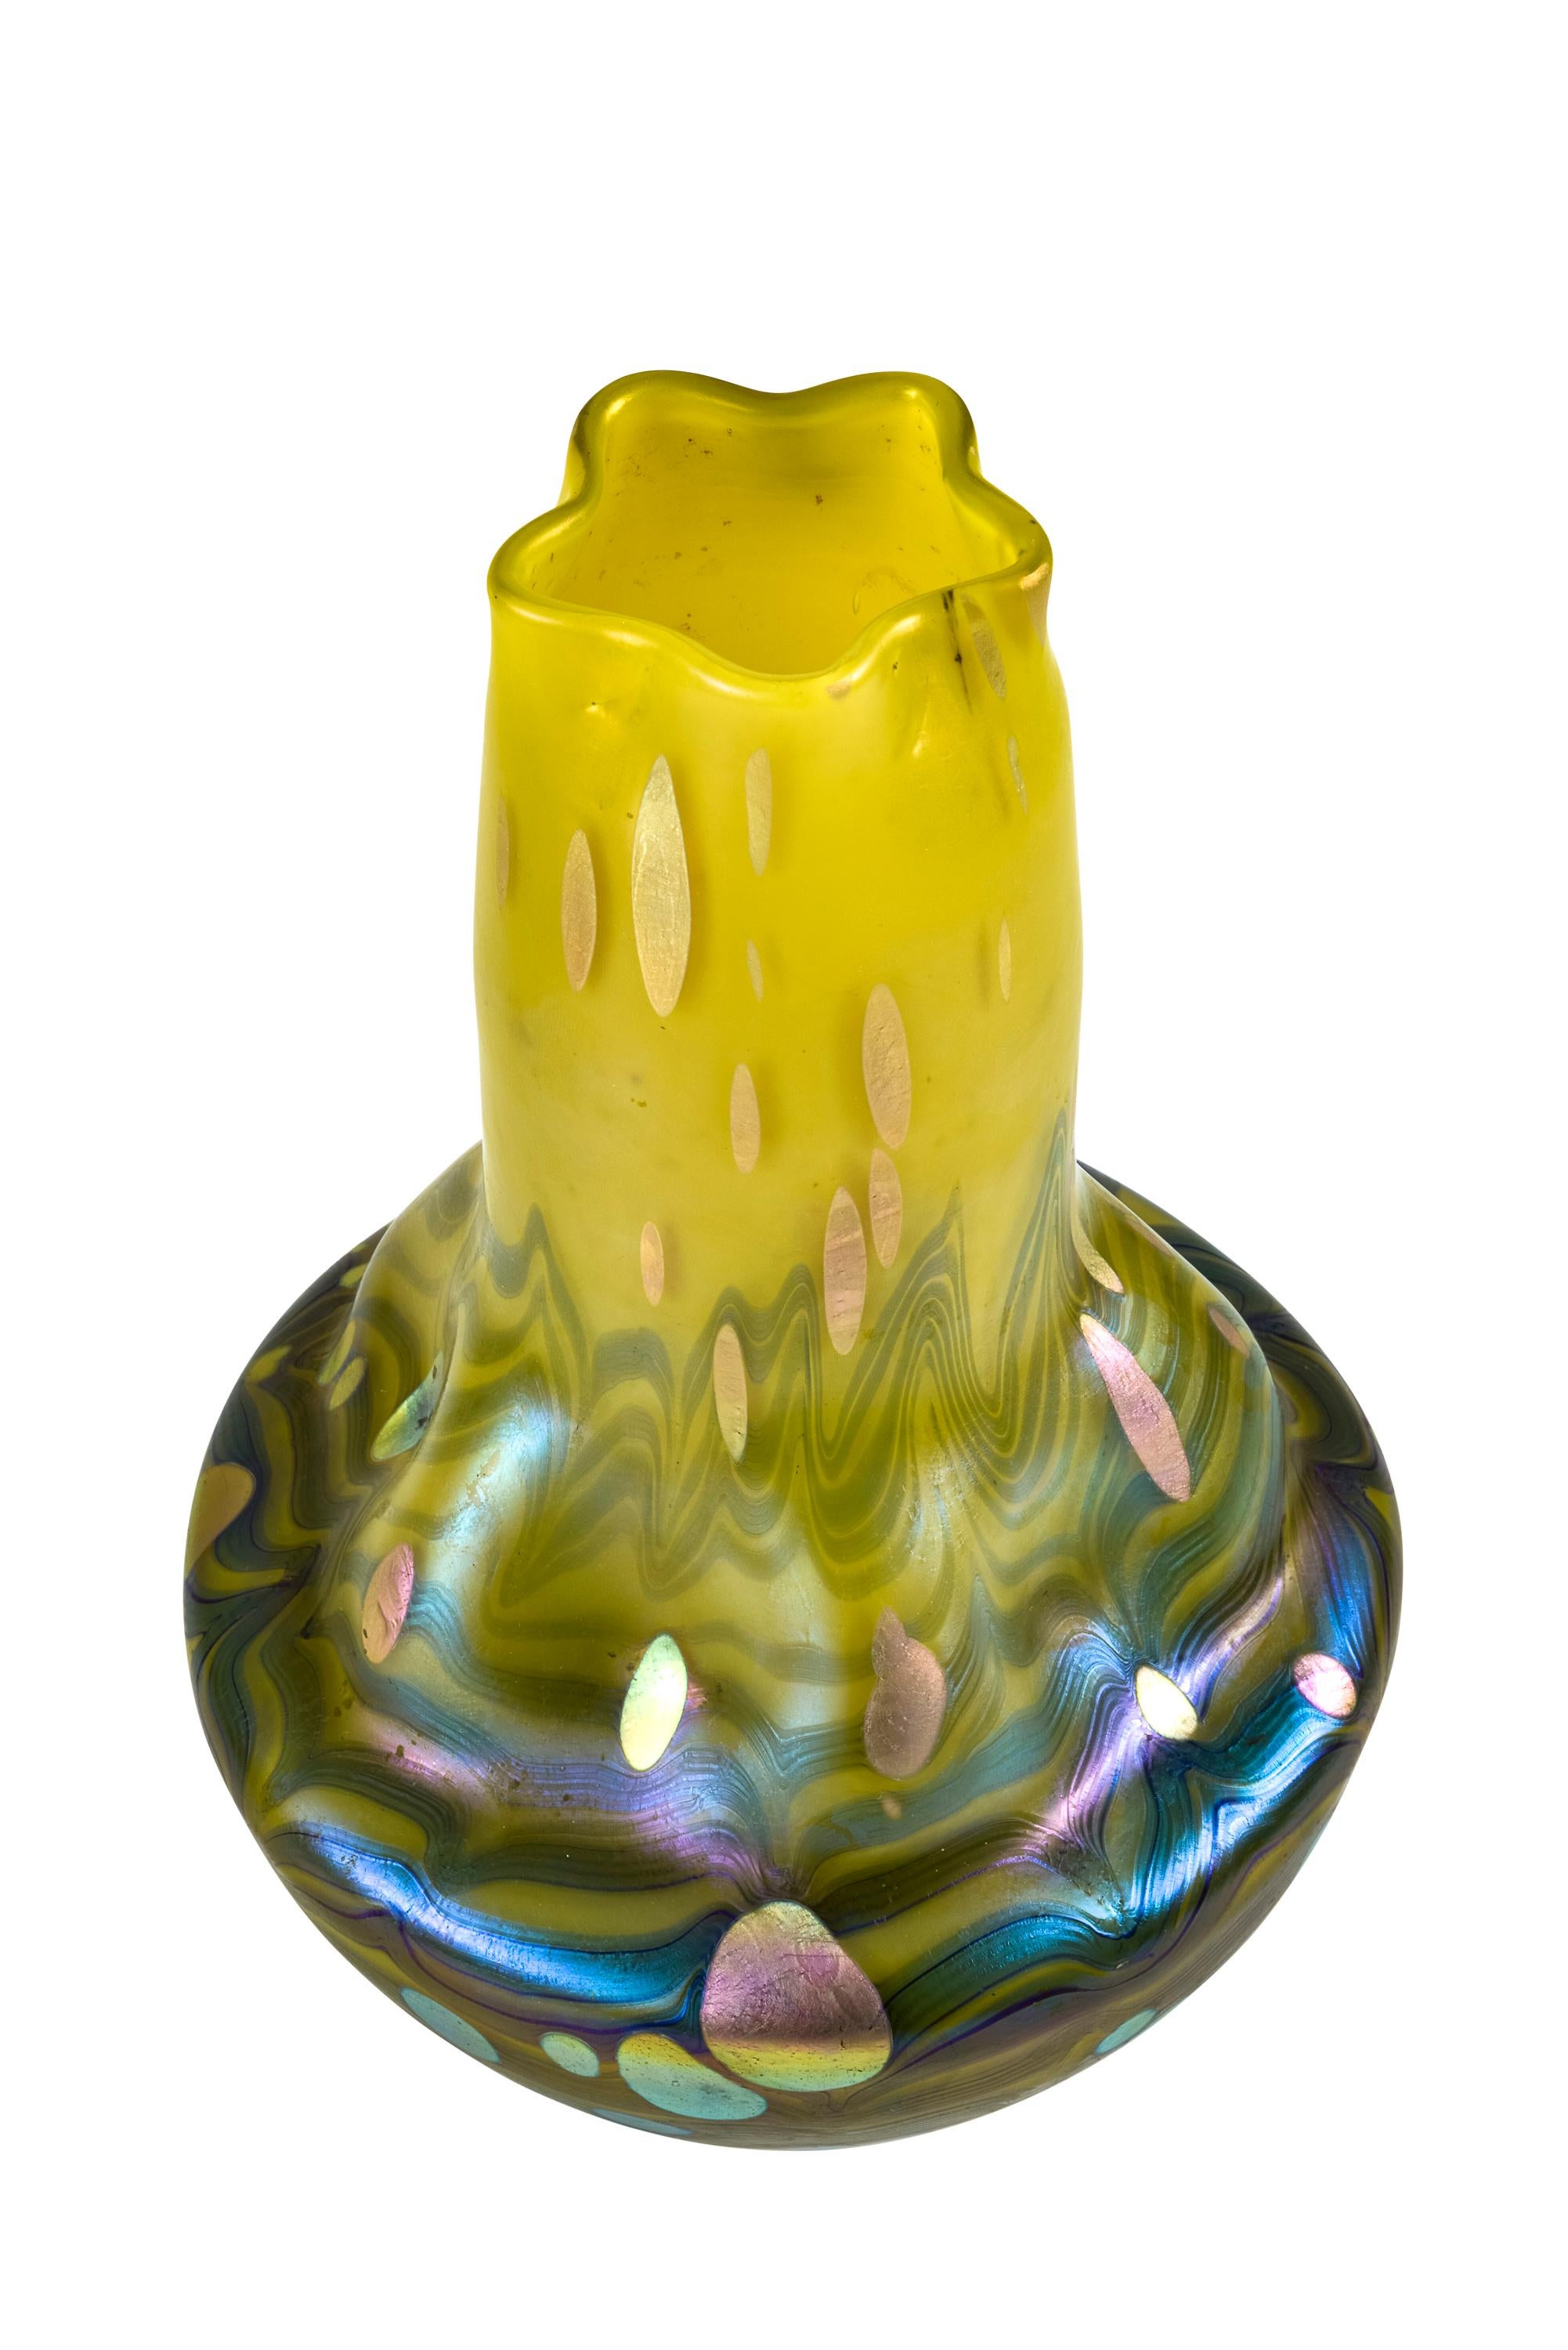 Austrian Jugendstil glass vase 